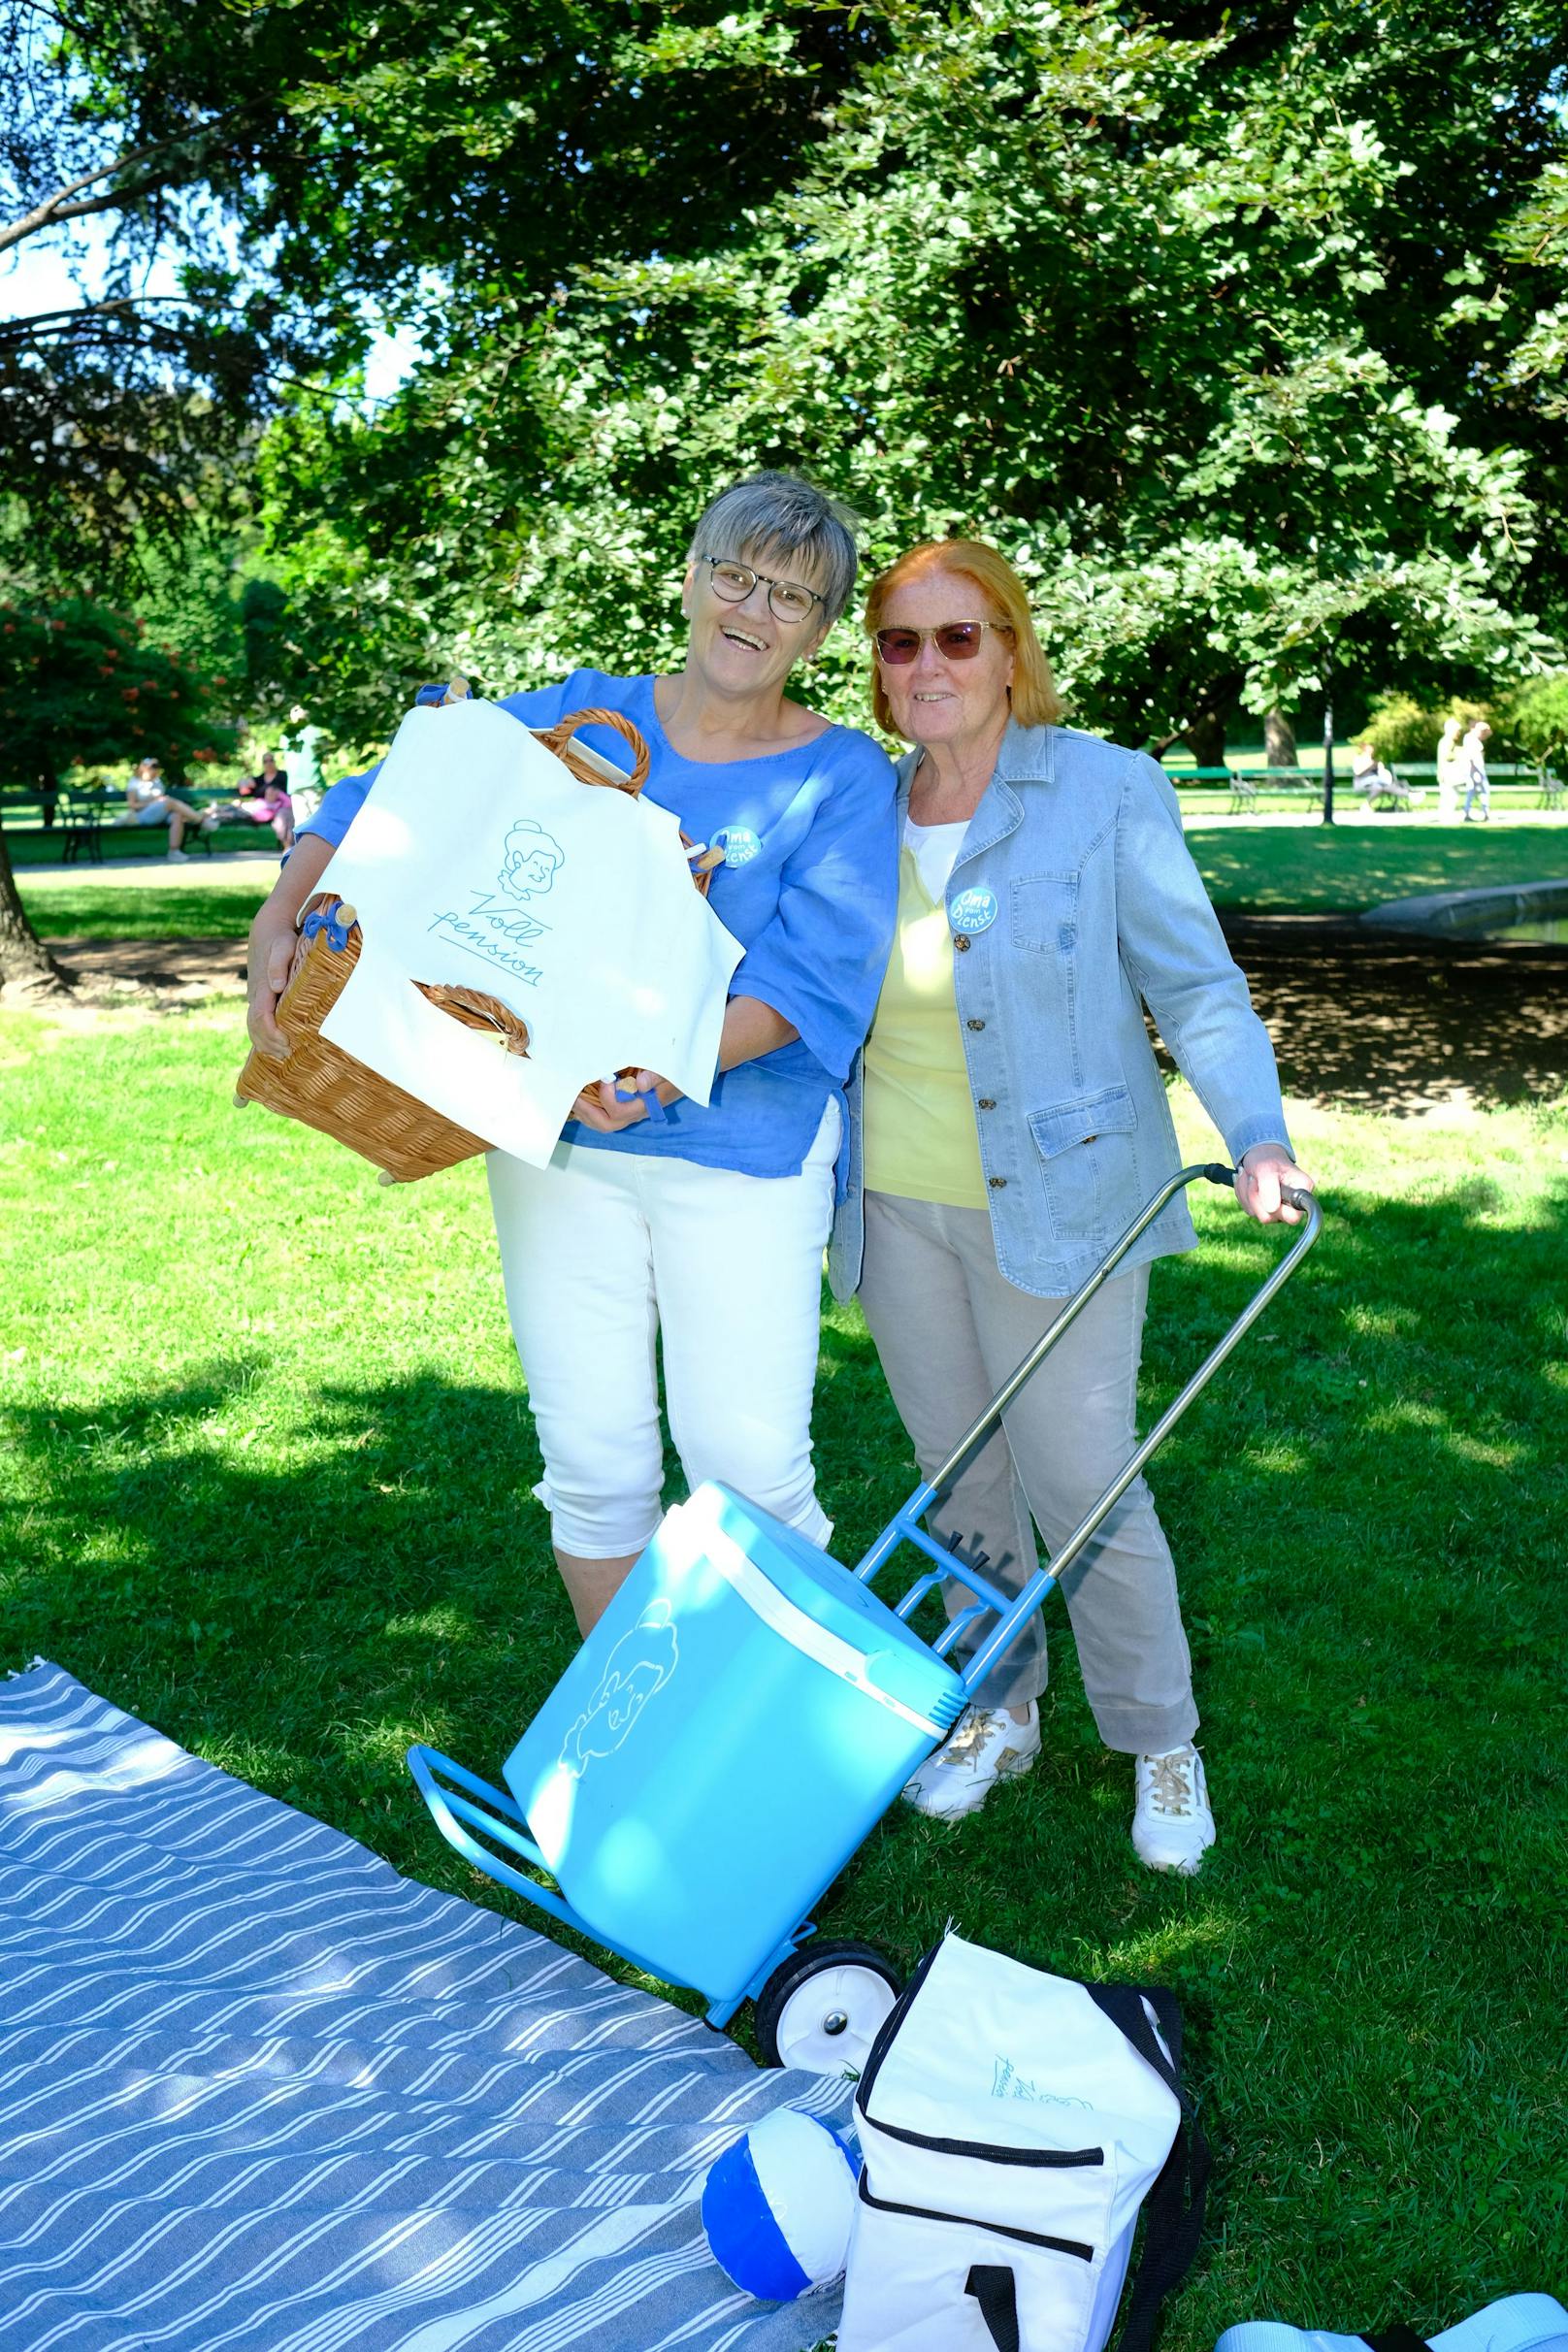 Karin (63) und Helen (73) freuen sich Ausflügler mich ihren Picknickkörben zu versorgen.